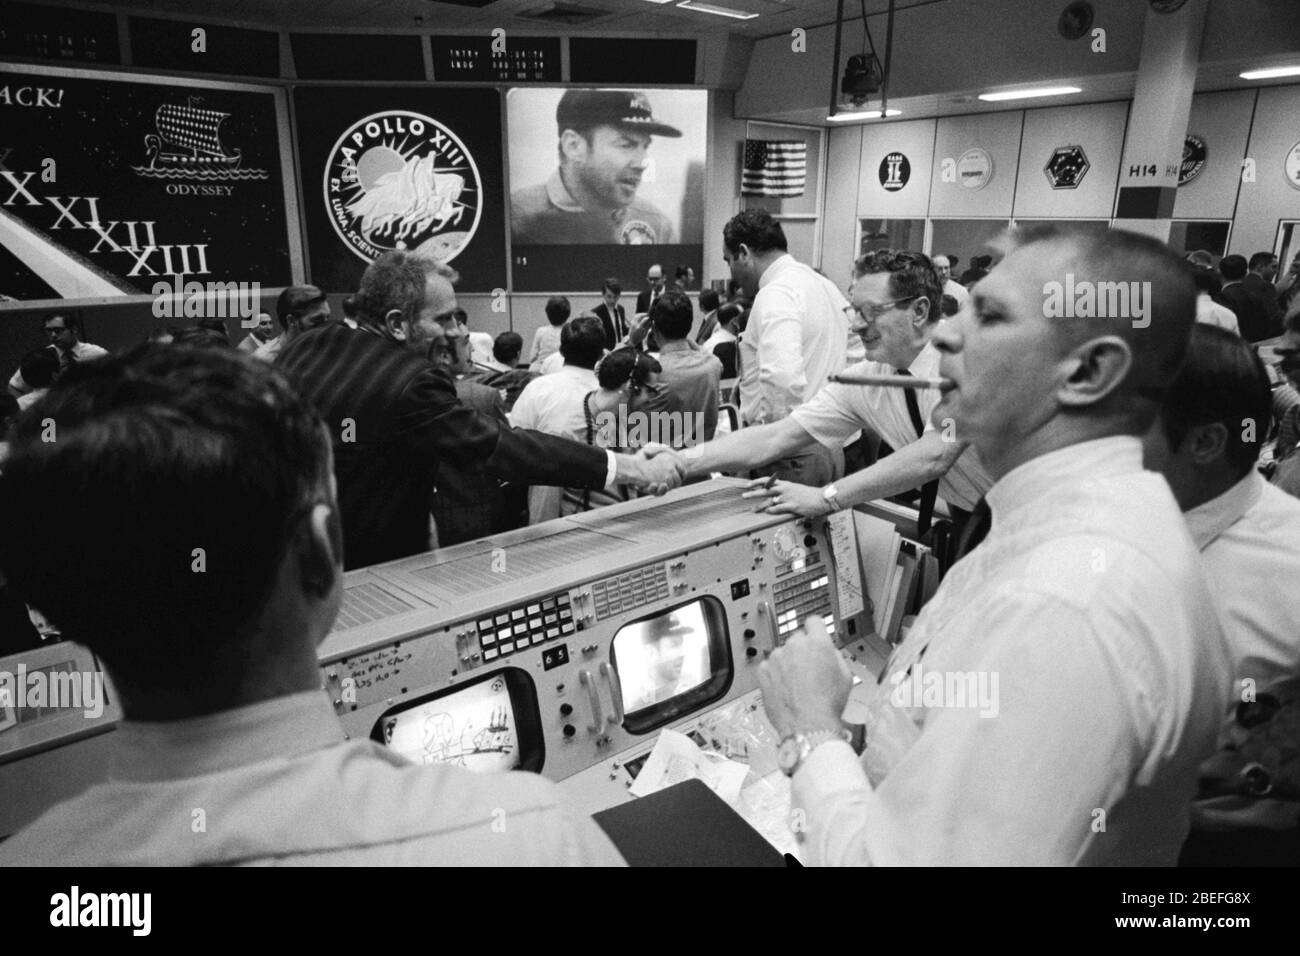 Deke Slayton (im schwarzen Hemd, links von der Mitte), der Leiter der Flugbesatzung, und Chester M. Lee schütteln in Mission Control die Hände, während Rocco Petrone Apollo 13 Kommandant Jim Lovell auf dem Bildschirm beobachtet. Apollo 13, gestartet am 11. April 1970, war die dritte Mission der NASA mit Besatzungsmacht zum Mond. Zwei Tage später, am 13. April, während der Fahrt zur Mondoberfläche, führte ein Fehler im elektrischen System eines der Sauerstofftanks des Service-Moduls zu einer Explosion, die beide Sauerstofftanks zum Versagen führte und auch zu einem Verlust der elektrischen Energie führte. Mit dem Abbruch der Mission, ein engagiertes Team in der Apollo Mi Stockfoto